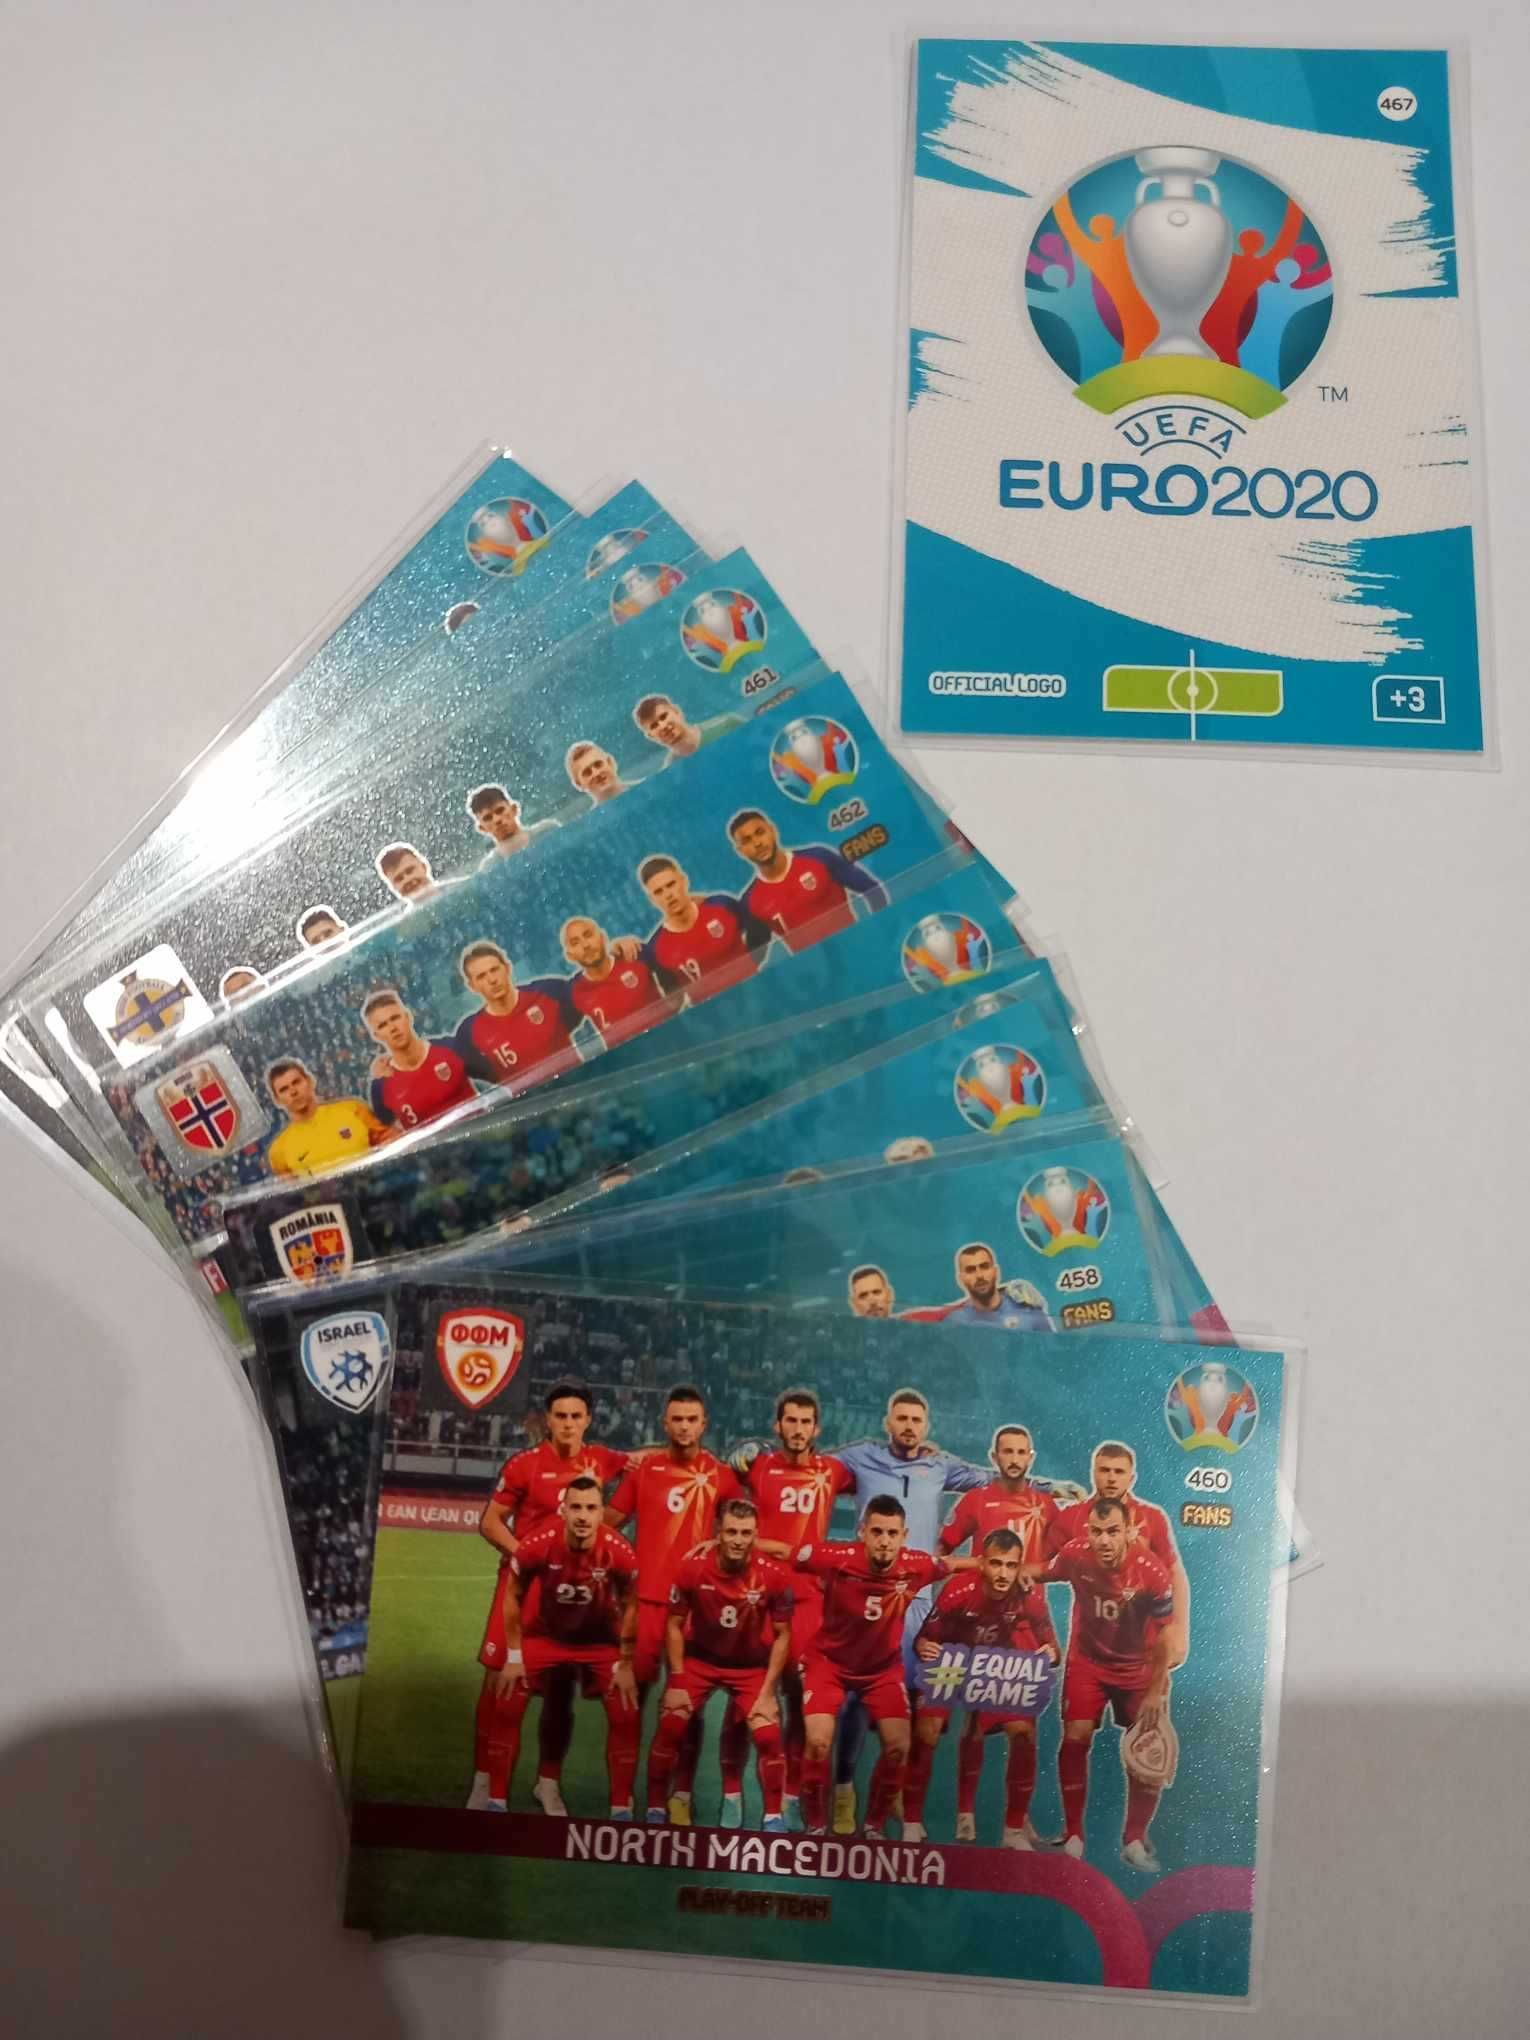 Karty specjalne z kolekcji Panini UEFA Euro 2020 Preview